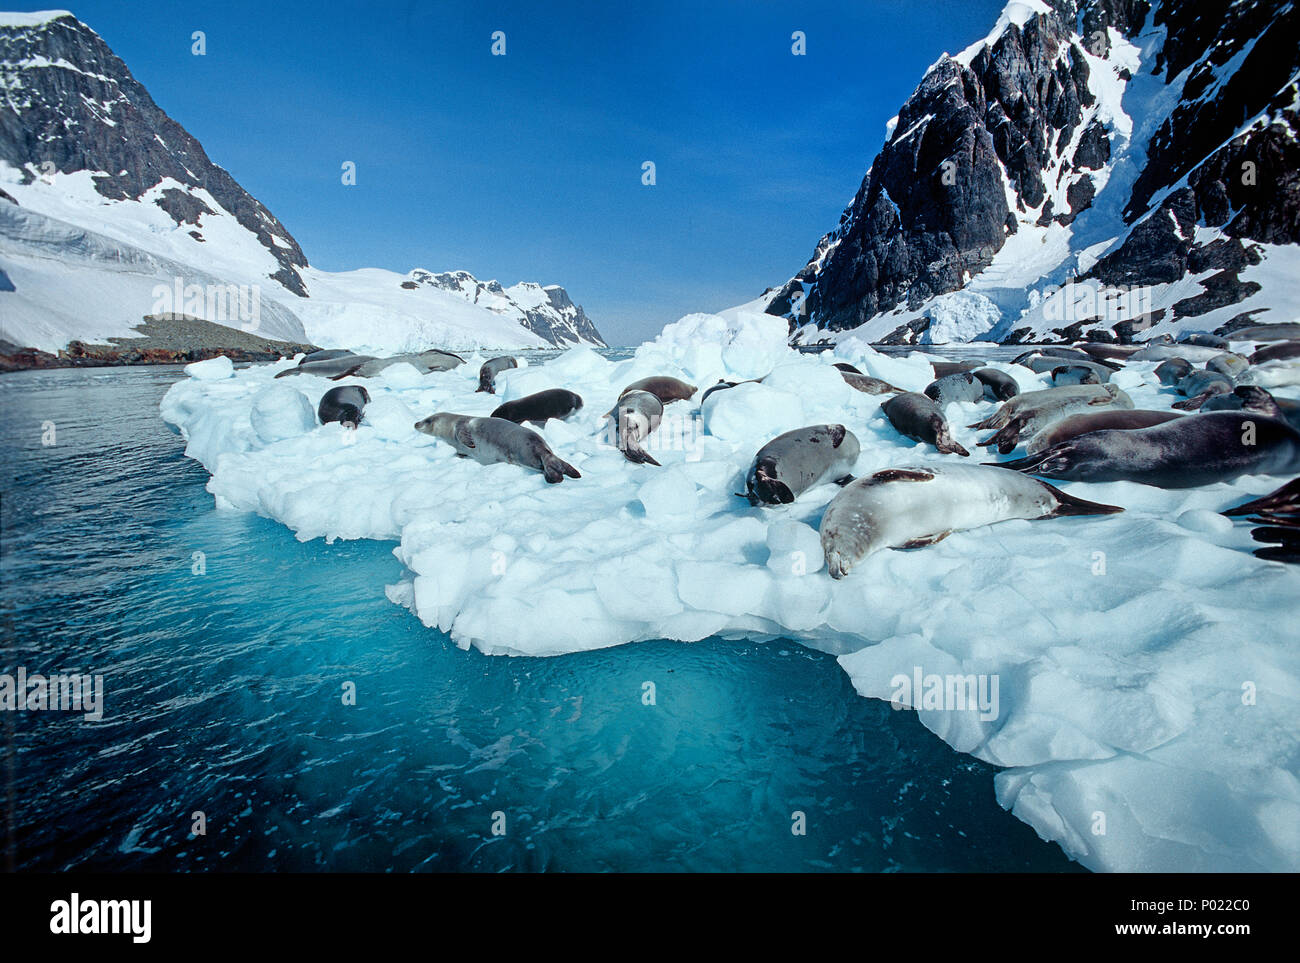 Les phoques crabiers (Lobodon carcinophagus) reposant sur le banc de glace, l'Antarctique, Canal Lemaire Banque D'Images